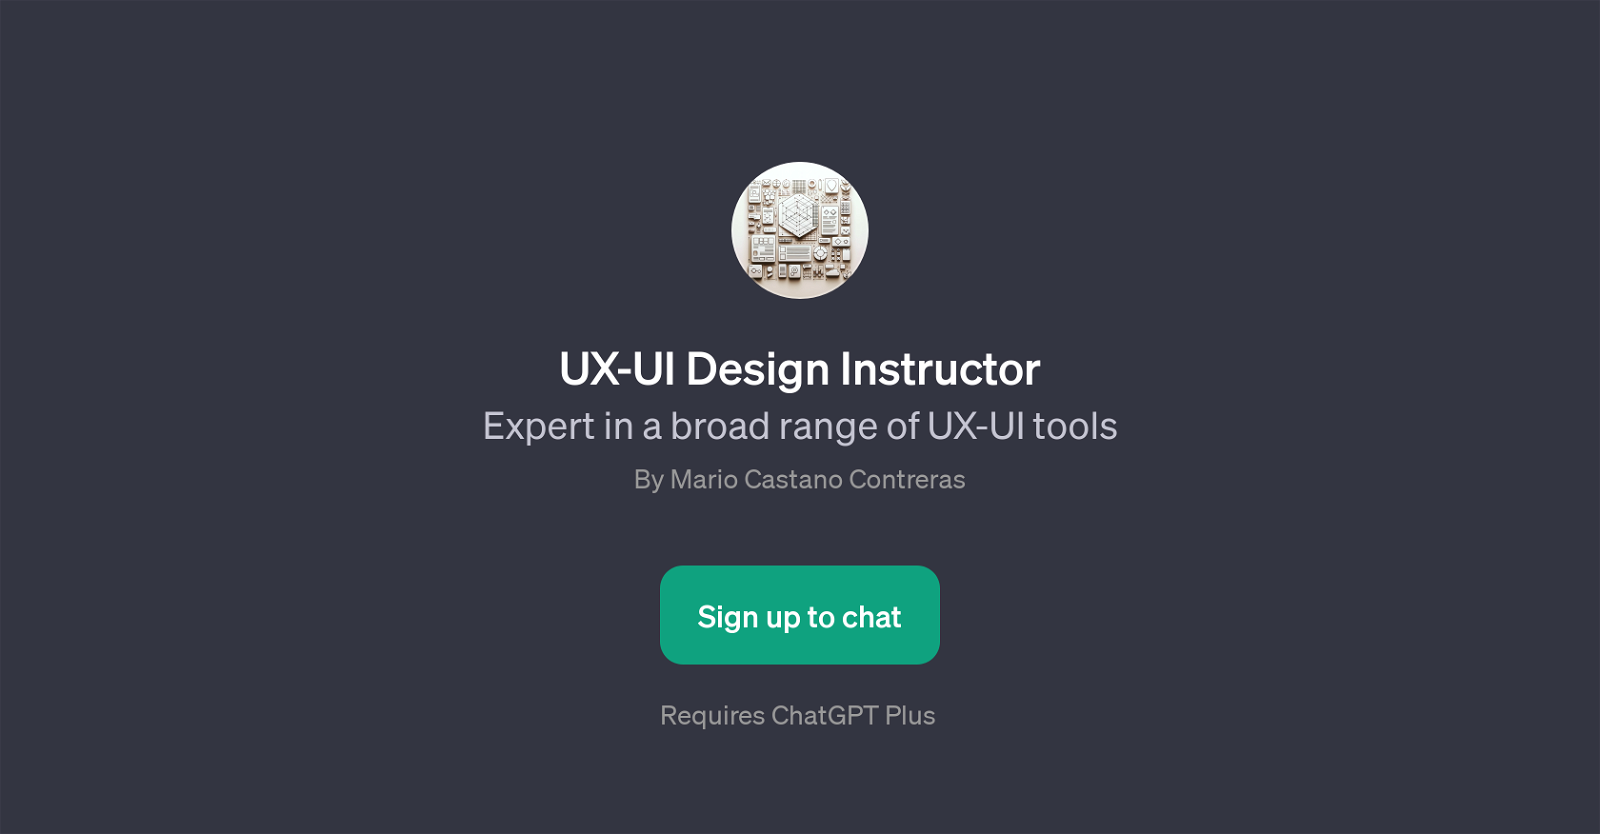 UX-UI Design Instructor website